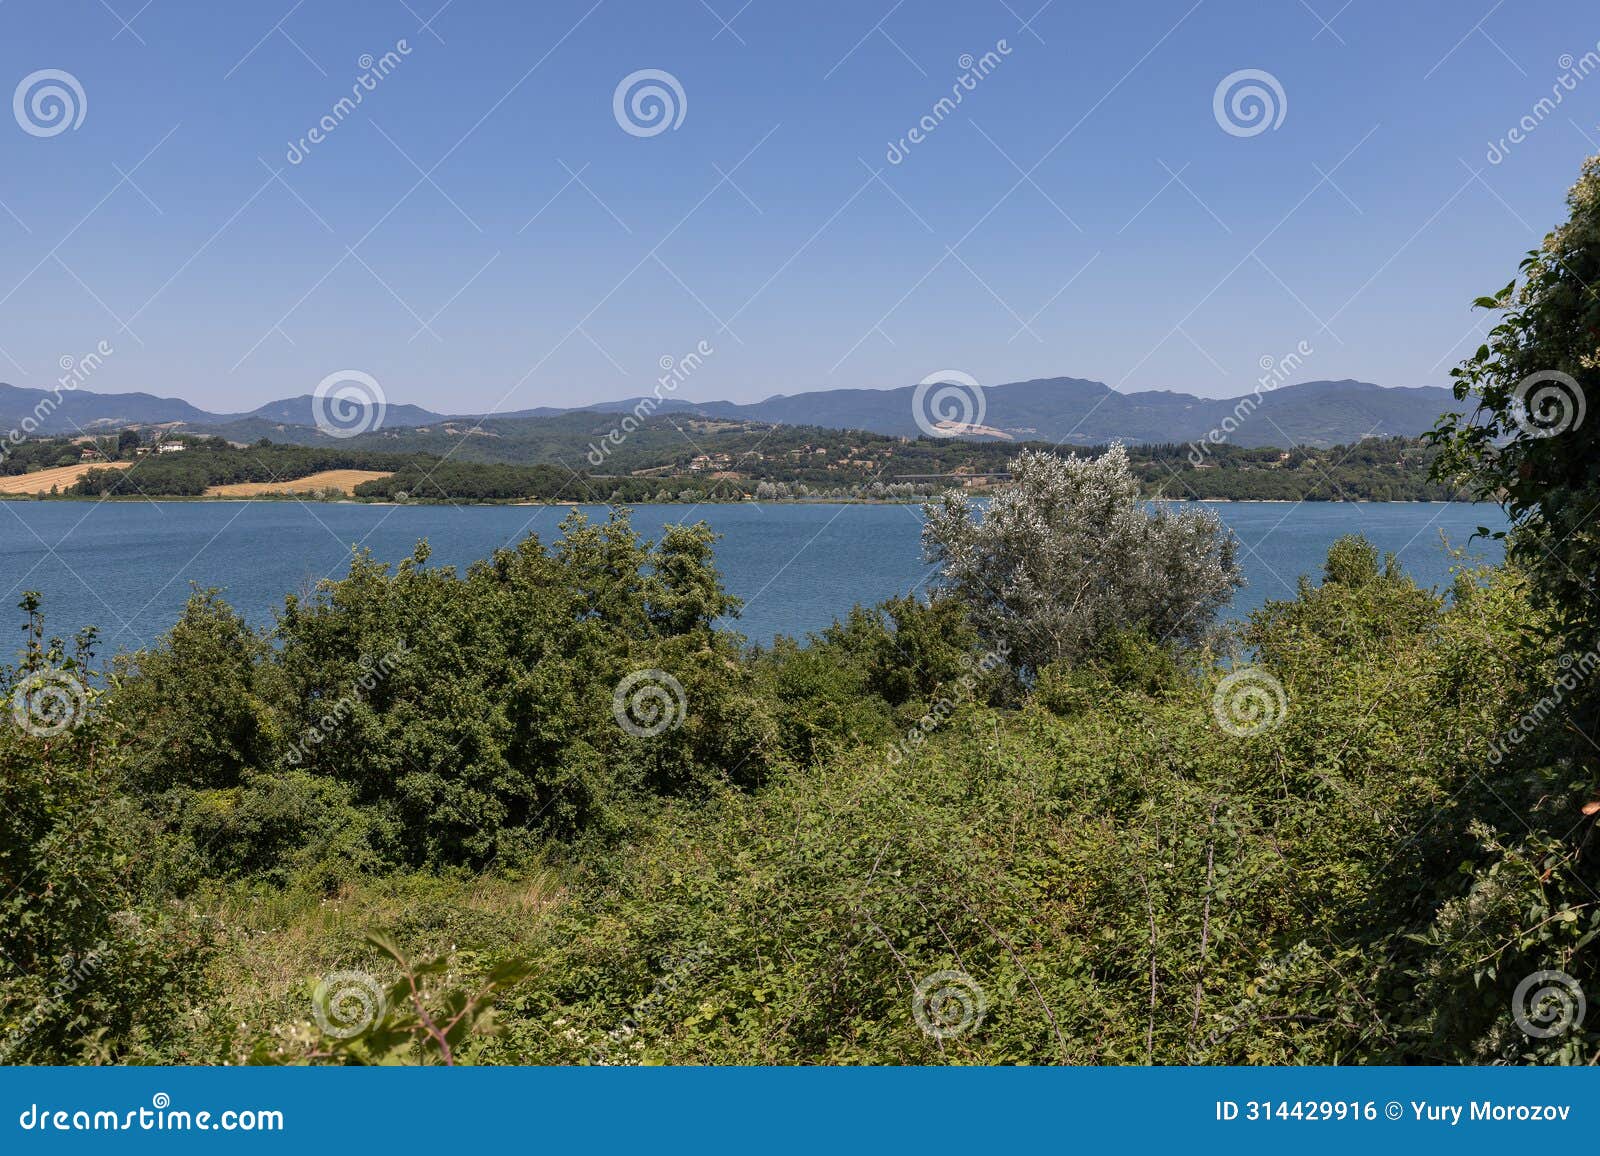 the bilancino lake. lago di bilancino, barberino del mugello, florence, italy: landscape at dawn of the picturesque lake in the